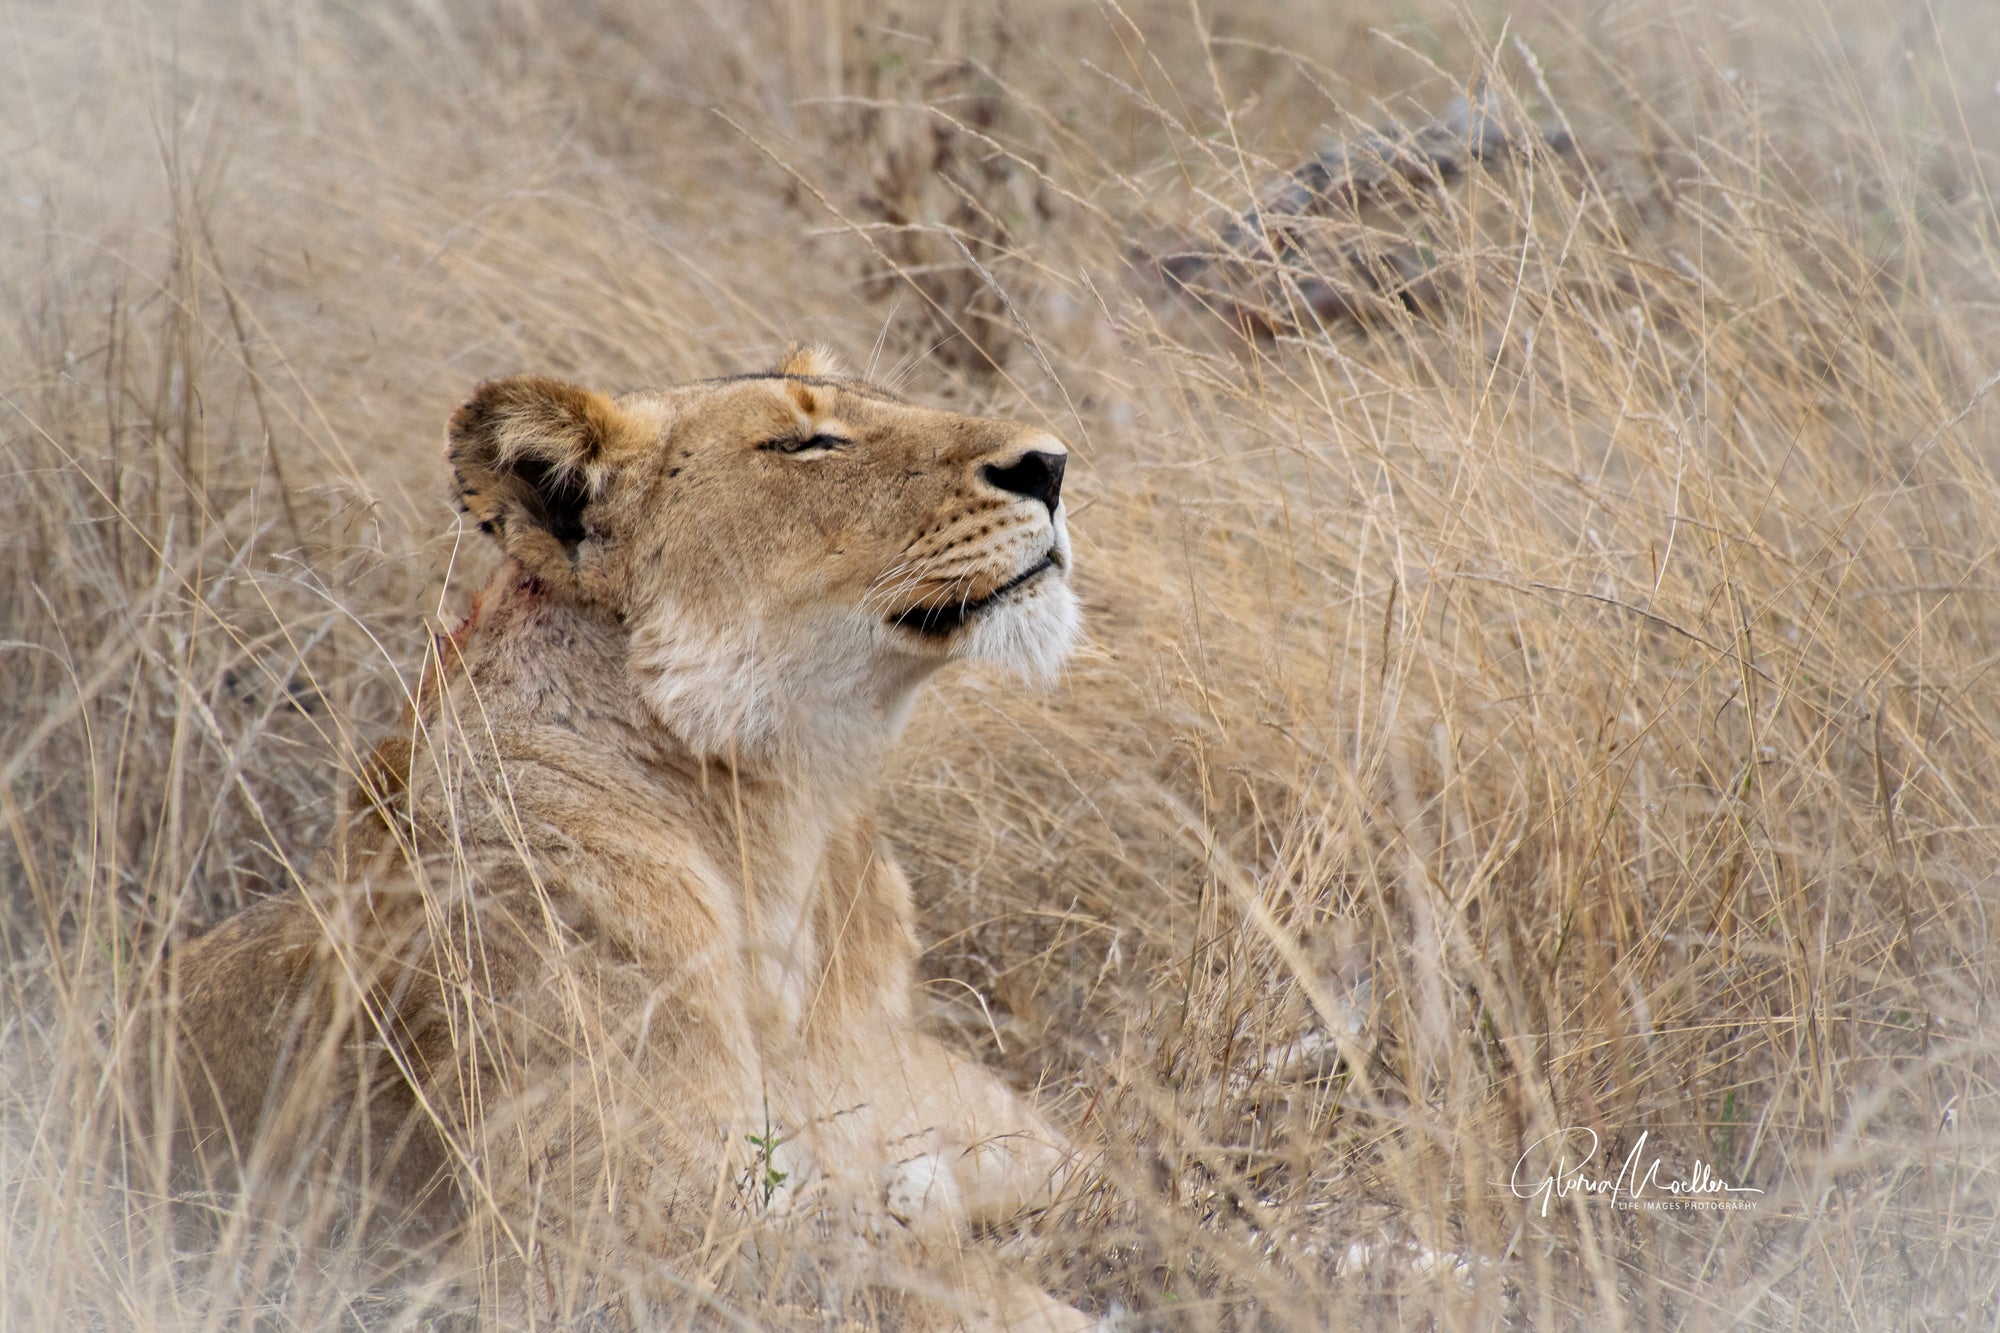 Dozing Lion at Mala Mala